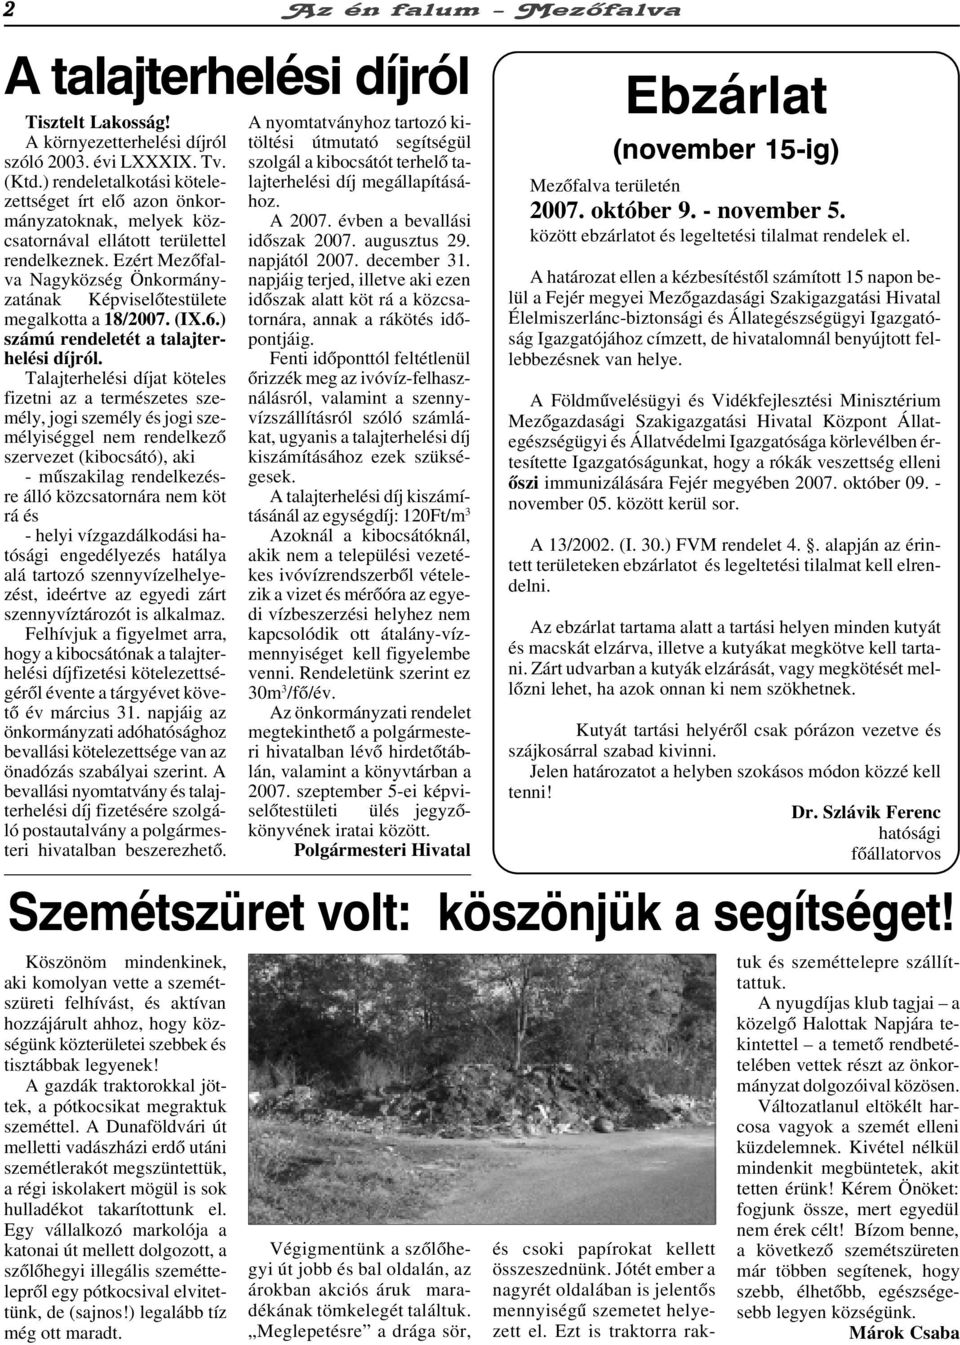 Ezért Mezõfalva Nagyközség Önkormányzatának Képviselõtestülete megalkotta a 18/2007. (IX.6.) számú rendeletét a talajterhelési díjról.